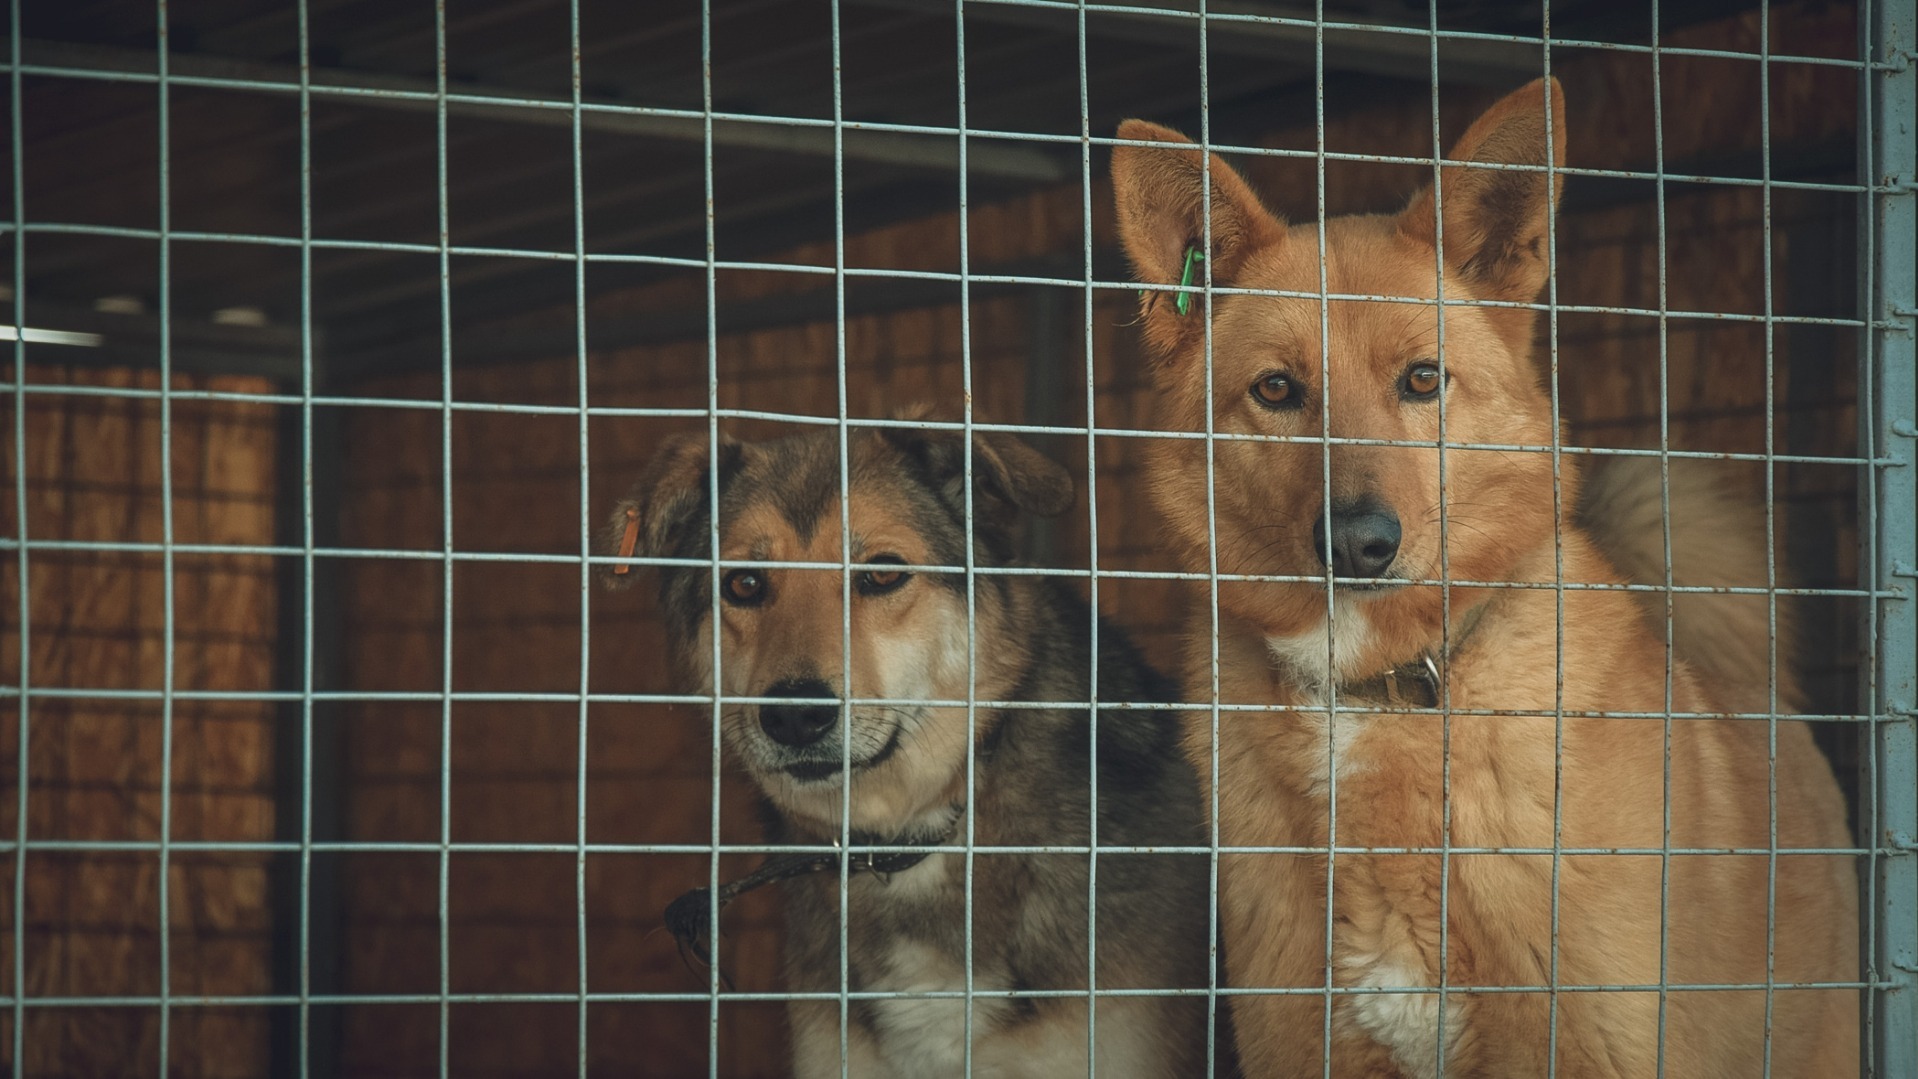 Новый приют для собак откроют в Нефтеюганском районе 1 августа